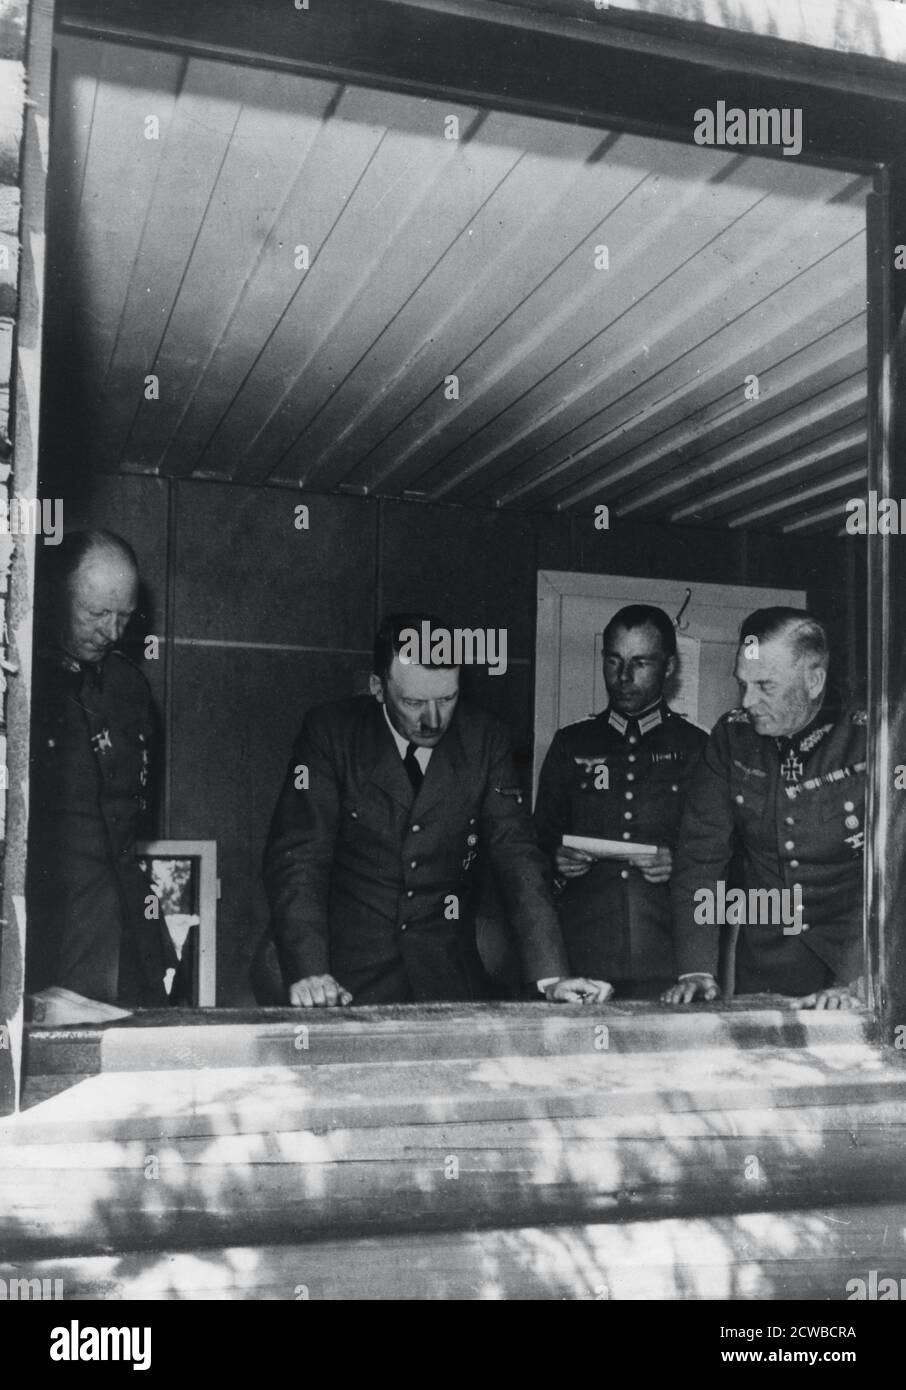 Adolf Hitler durante l'invasione della Francia, seconda guerra mondiale, 1940. Hitler viene mostrato studiando mappe presso la sua sede affiancata dal generale Alfred Jodl, capo dello staff operativo, maggiore Deile e generale Wilhelm Keitel. Il fotografo è sconosciuto. Foto Stock